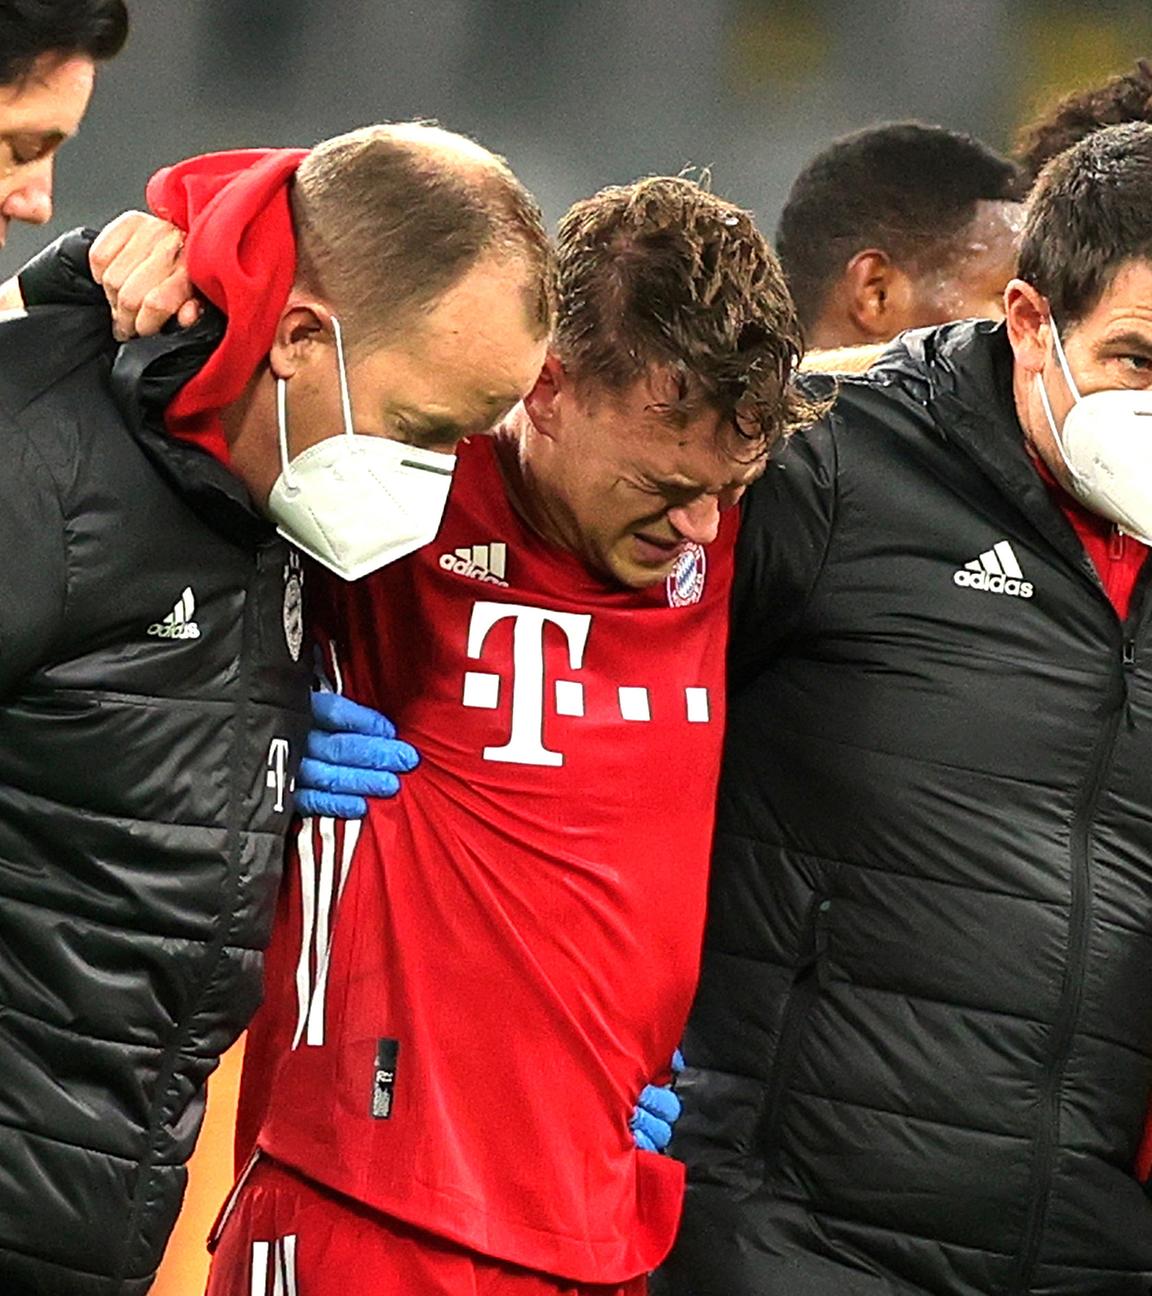 Bayerns Joshua Kimmich wird gestützt als er den Platz nach einer Verletzung verlässt.